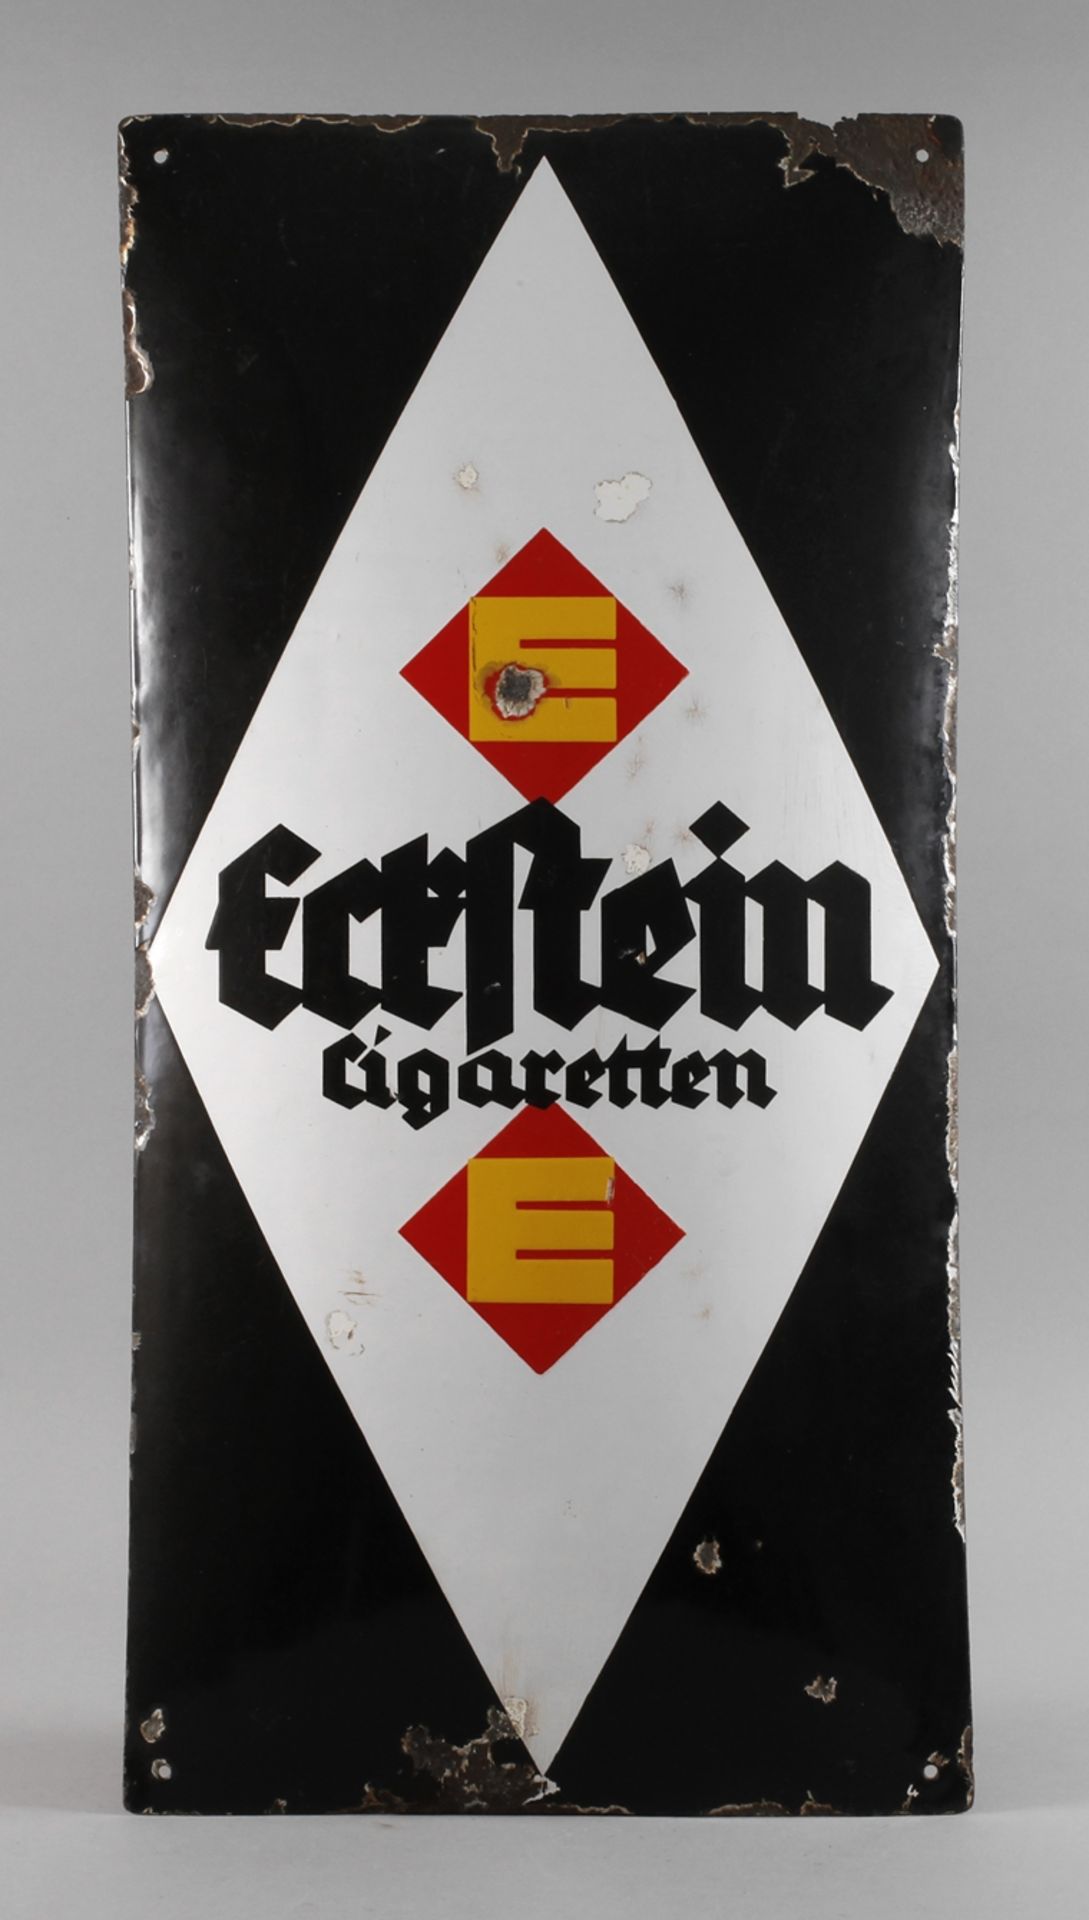 Blechschild Eckstein Zigarettenum 1920, ungemarkt, hochrechteckiges, stark gebauchtes Blechschild,